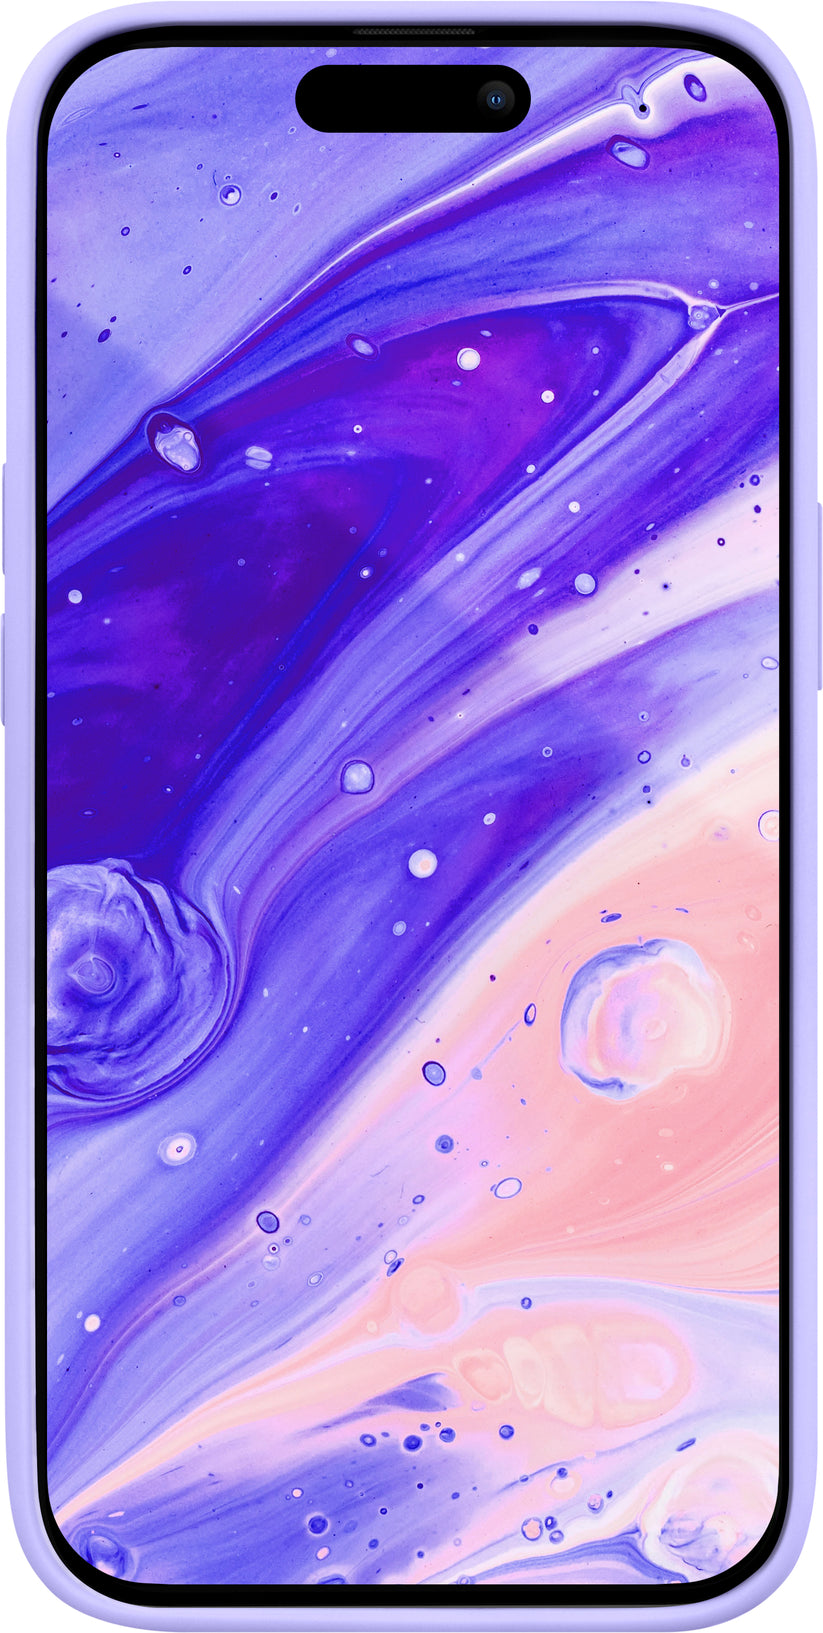 Funda para iPhone 14 Huex Pastels de Laut iPhone 14 Pro Max Violeta - Rossellimac